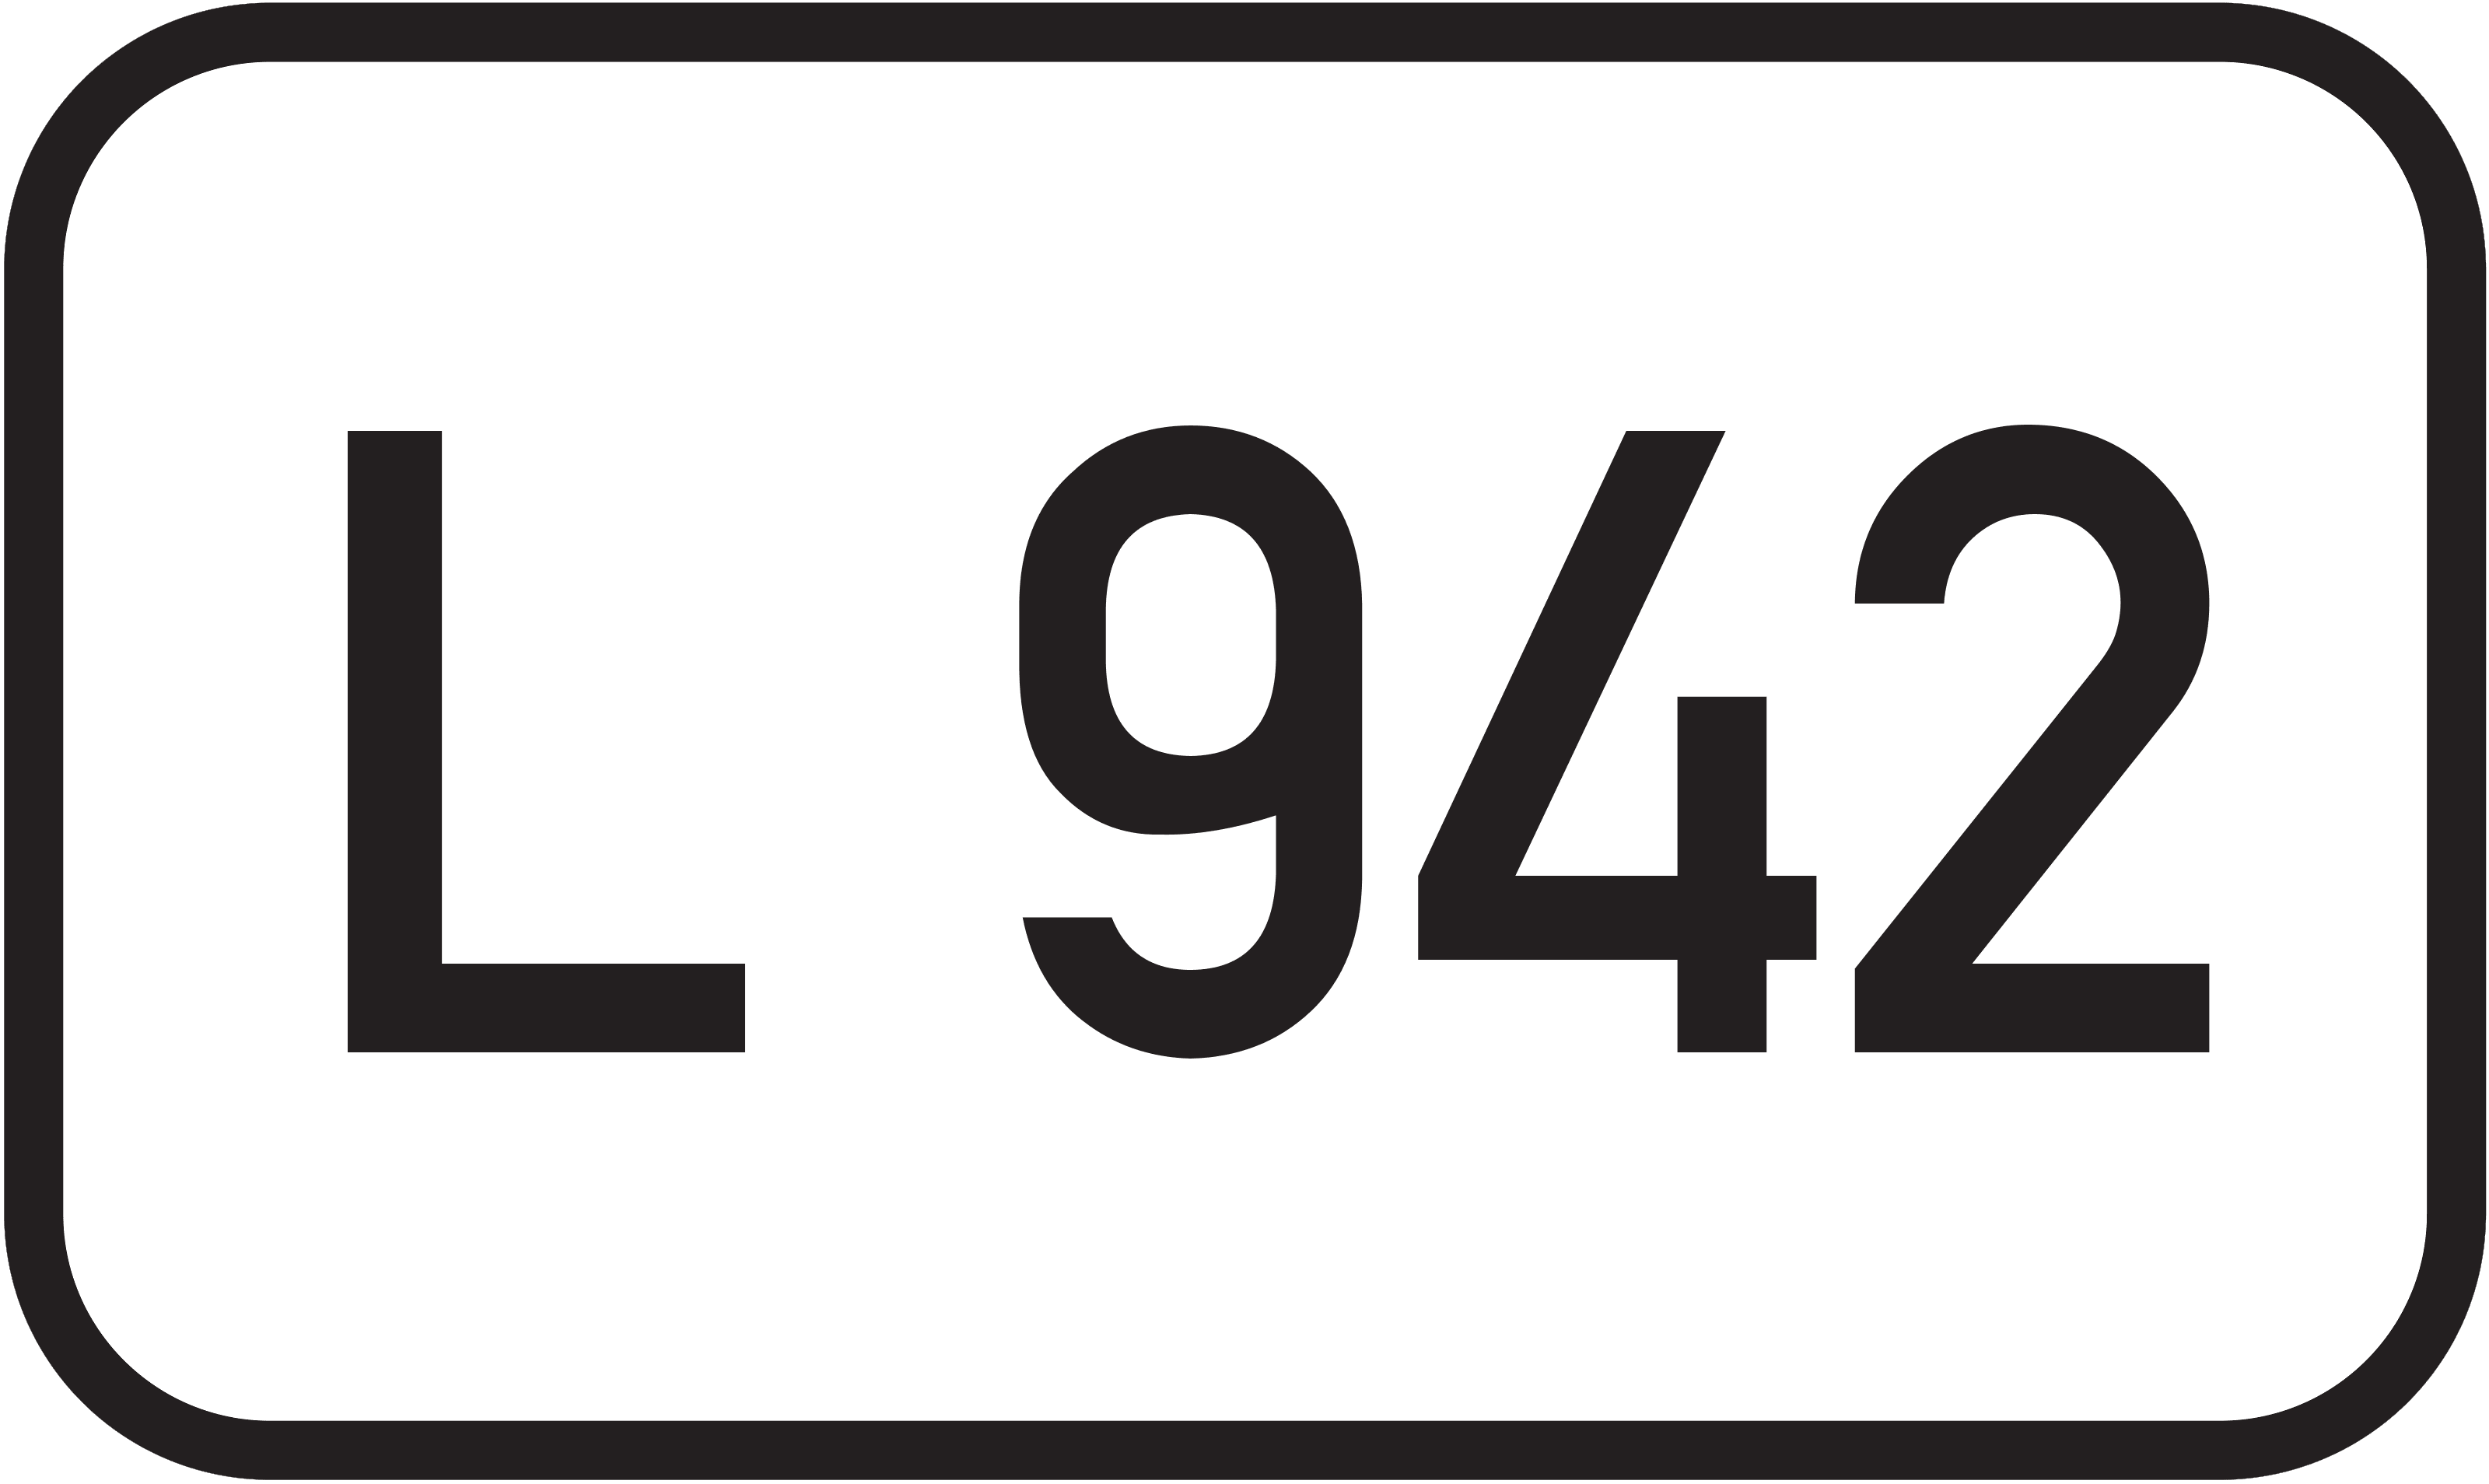 Landesstraße L 942